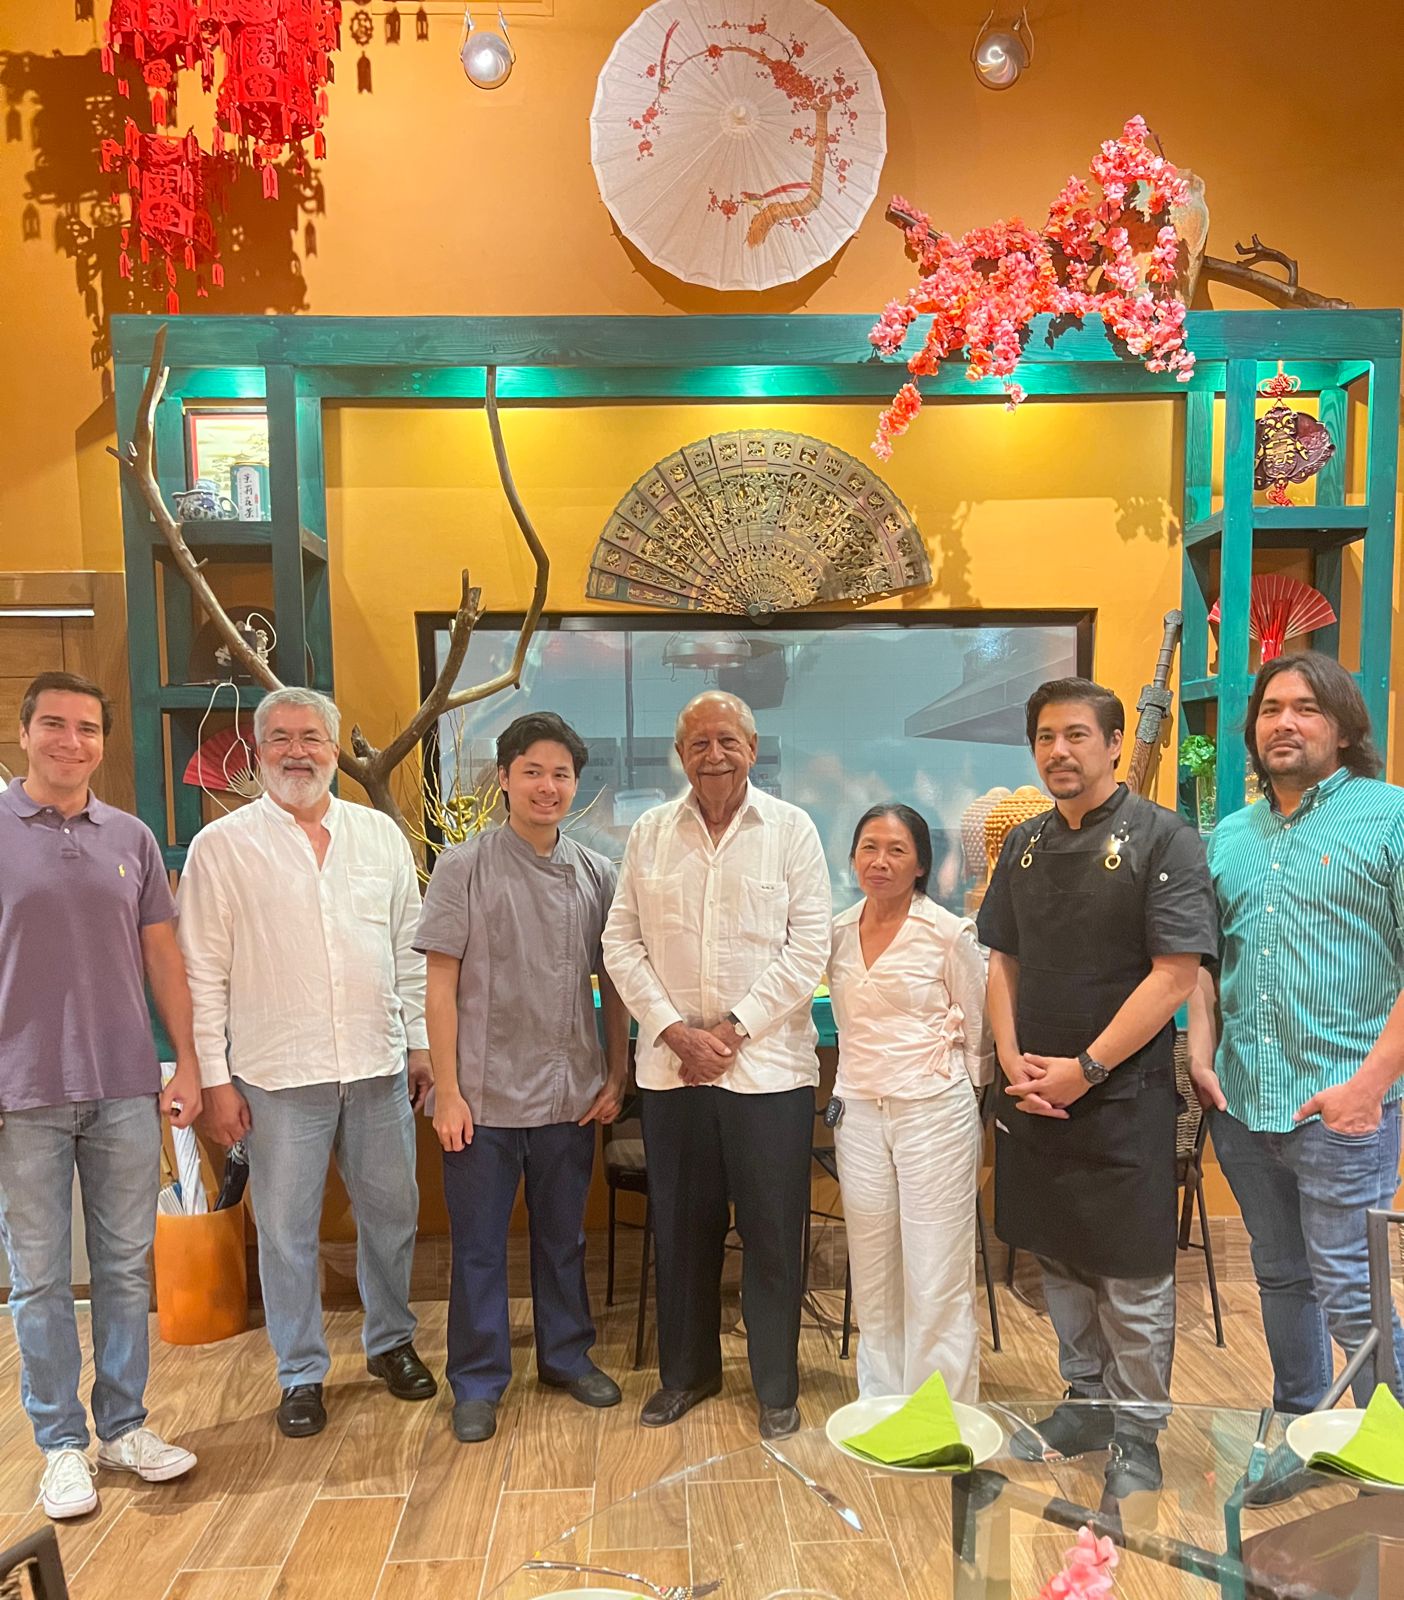 Chinois Restaurante abre nueva sucursal en Bávaro-Punta Cana